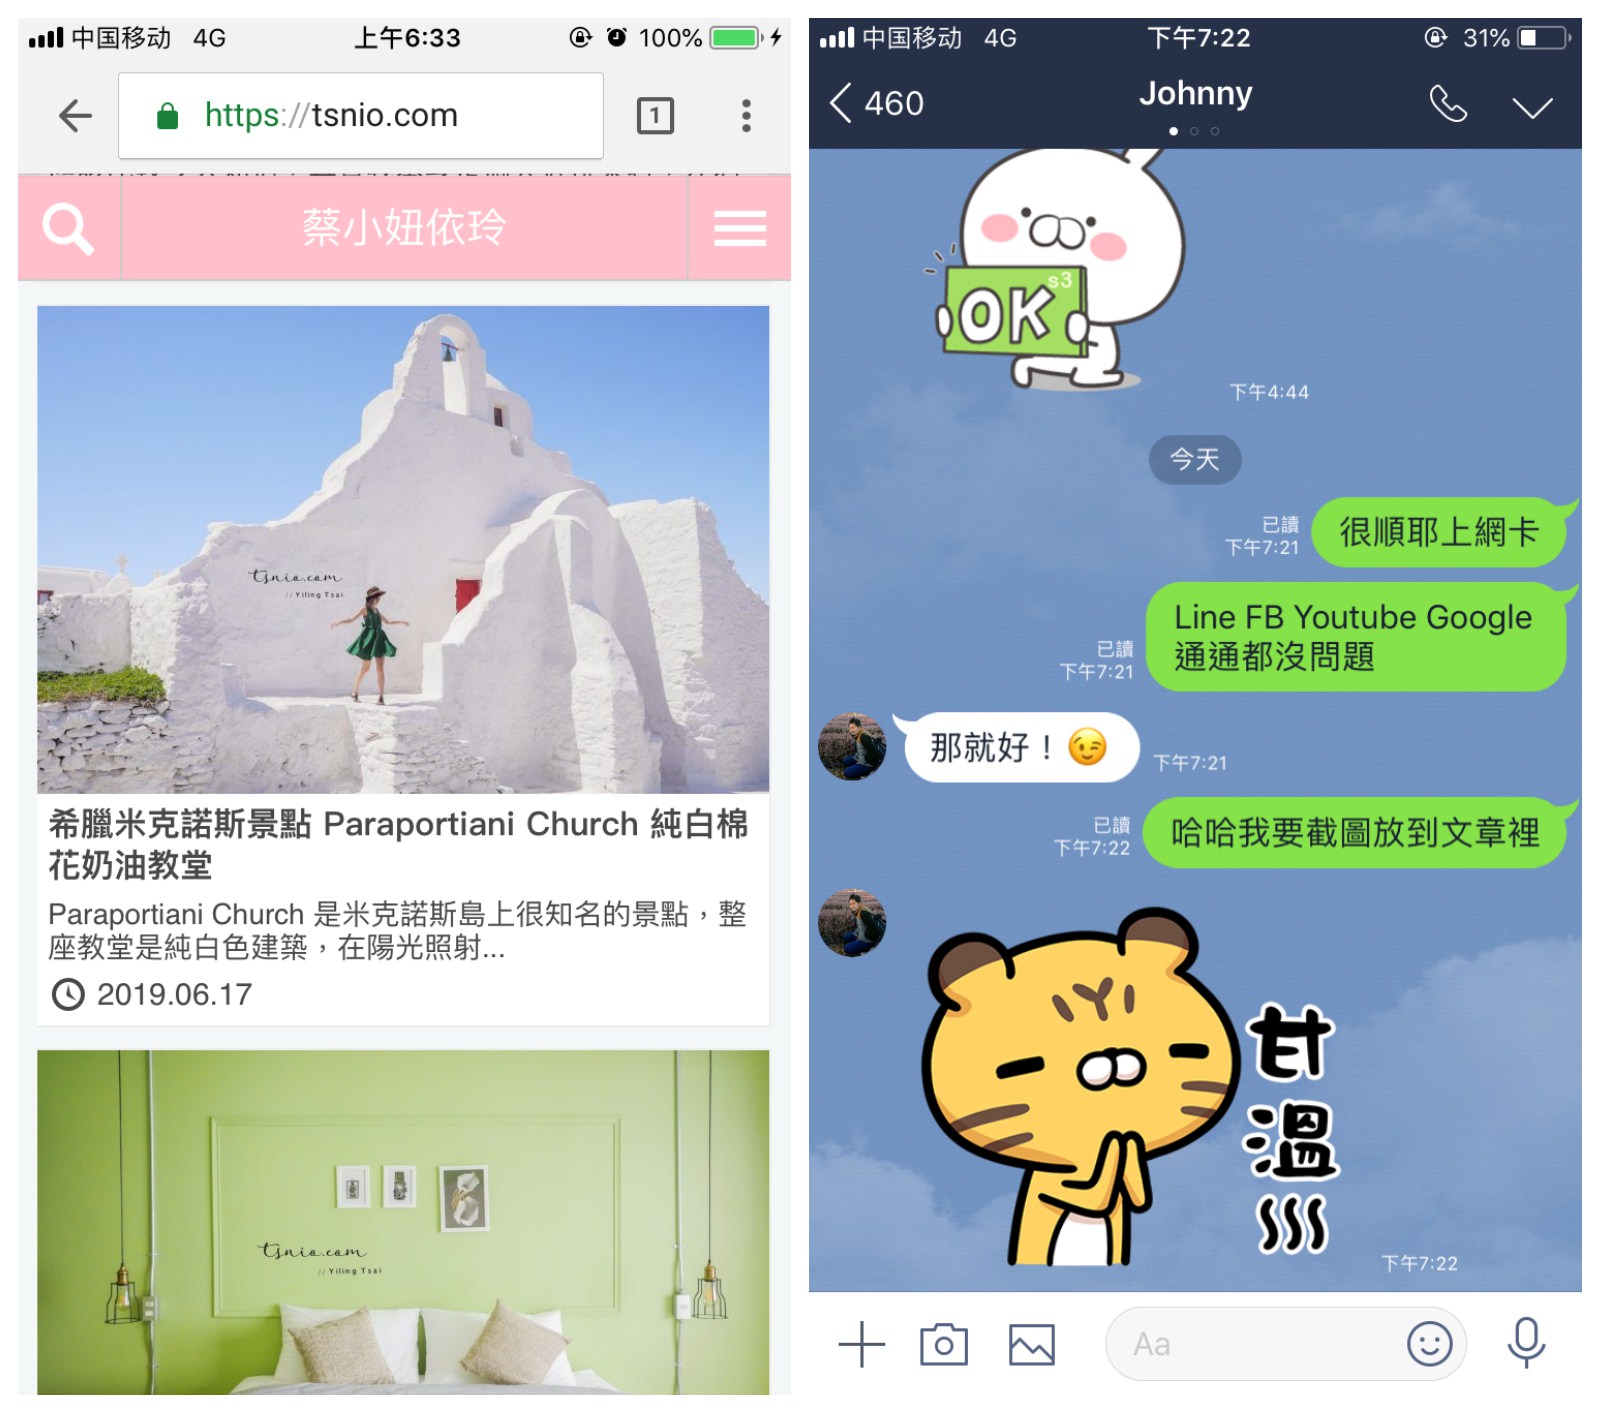 中國上網推薦 高速流量吃到飽 旅遊必備免翻牆中國 SIM 卡